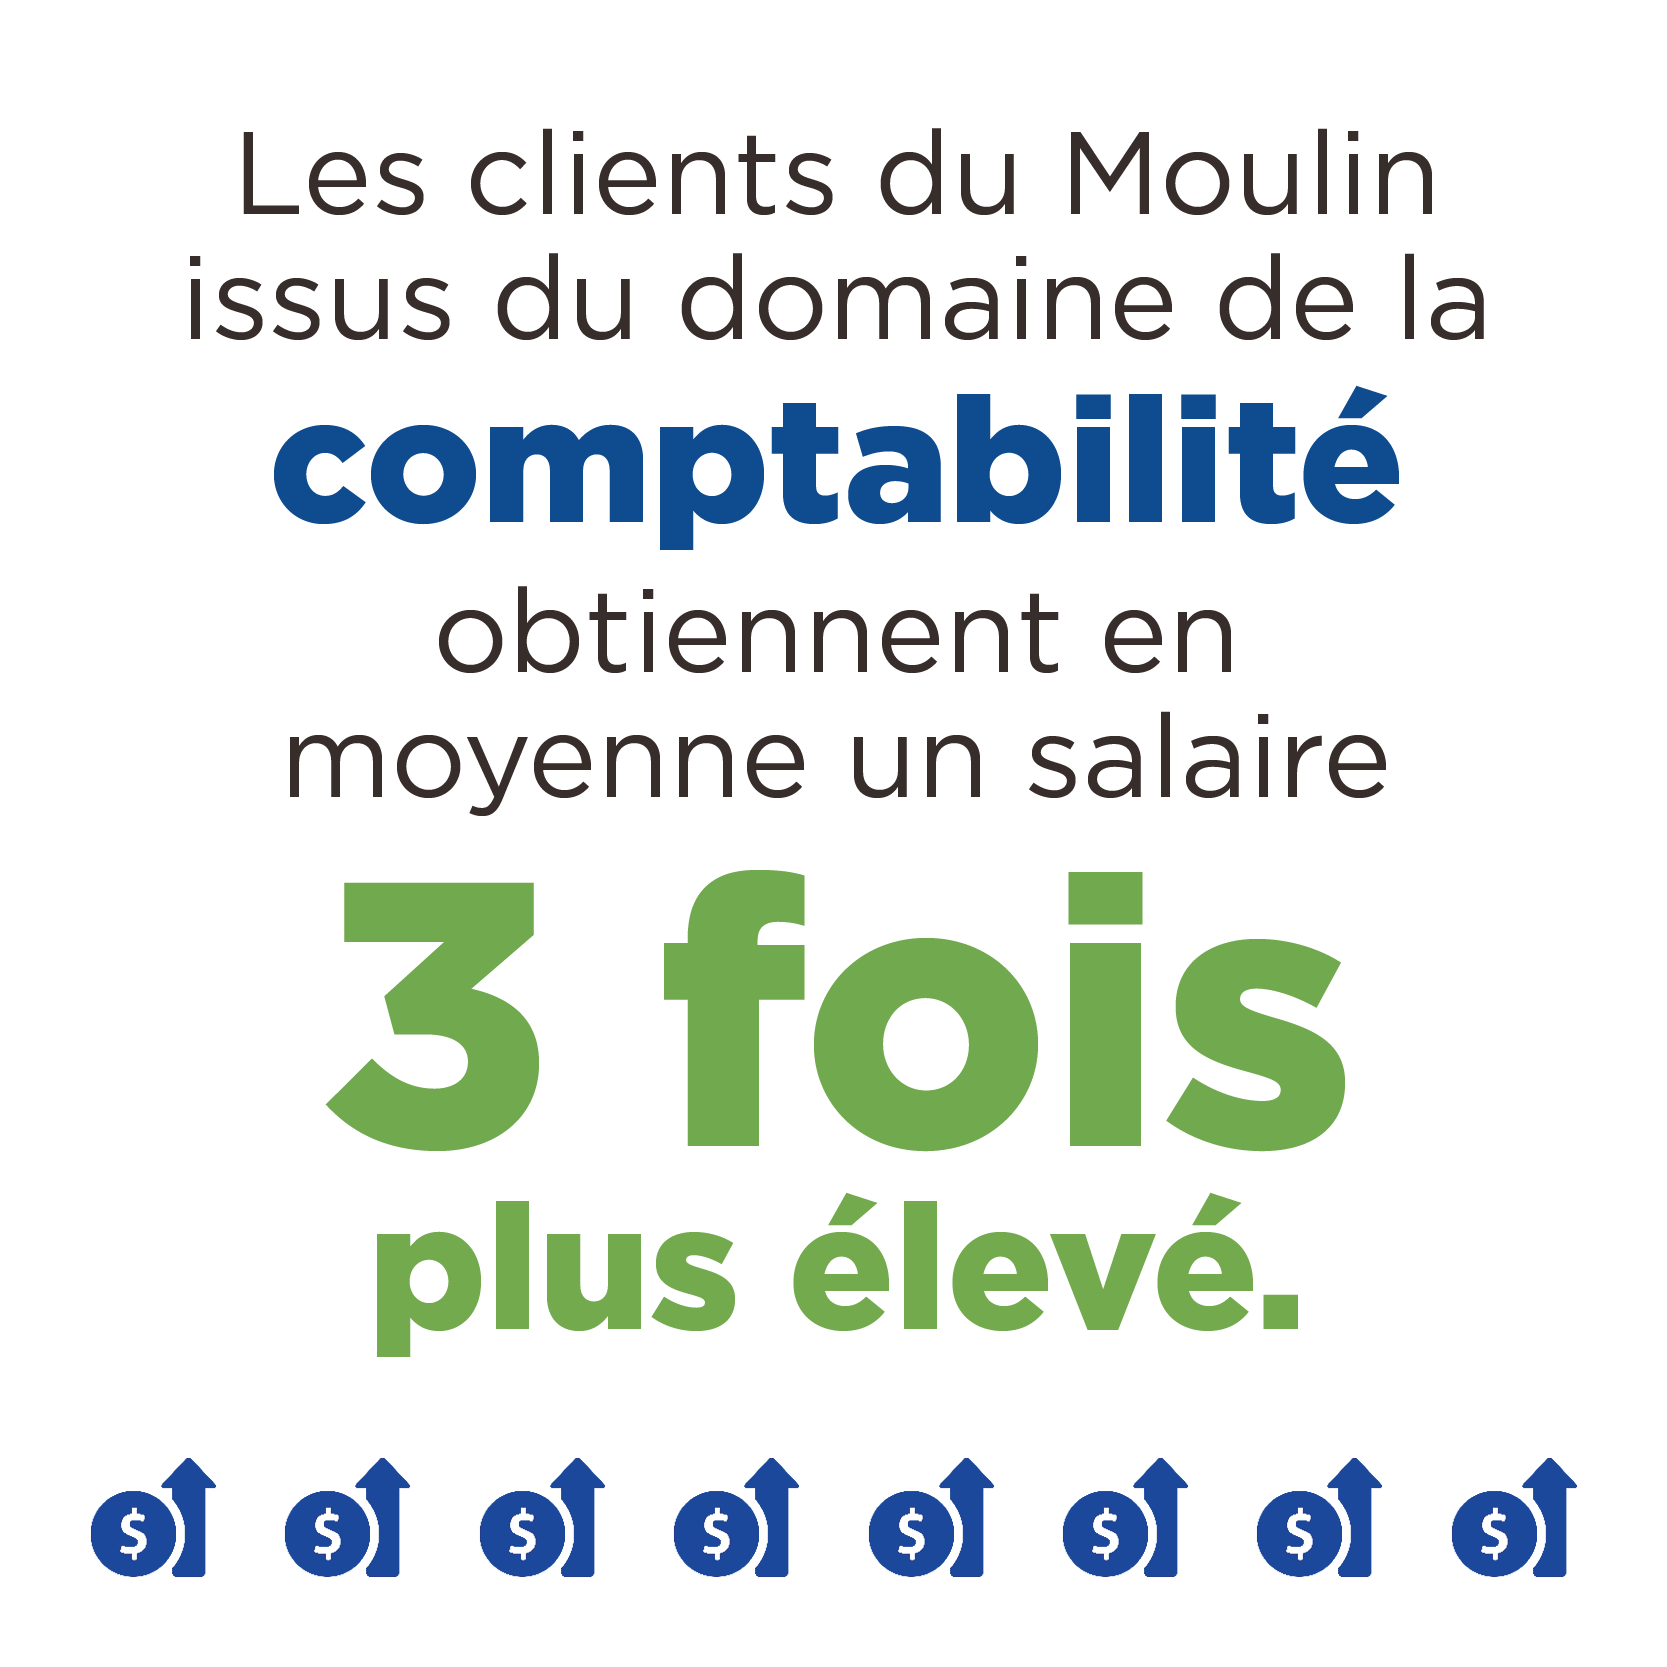 Les clients du Moulin issus du domaine de la comptabilité obtiennent en moyenne un salaire 3 fois plus élevé.